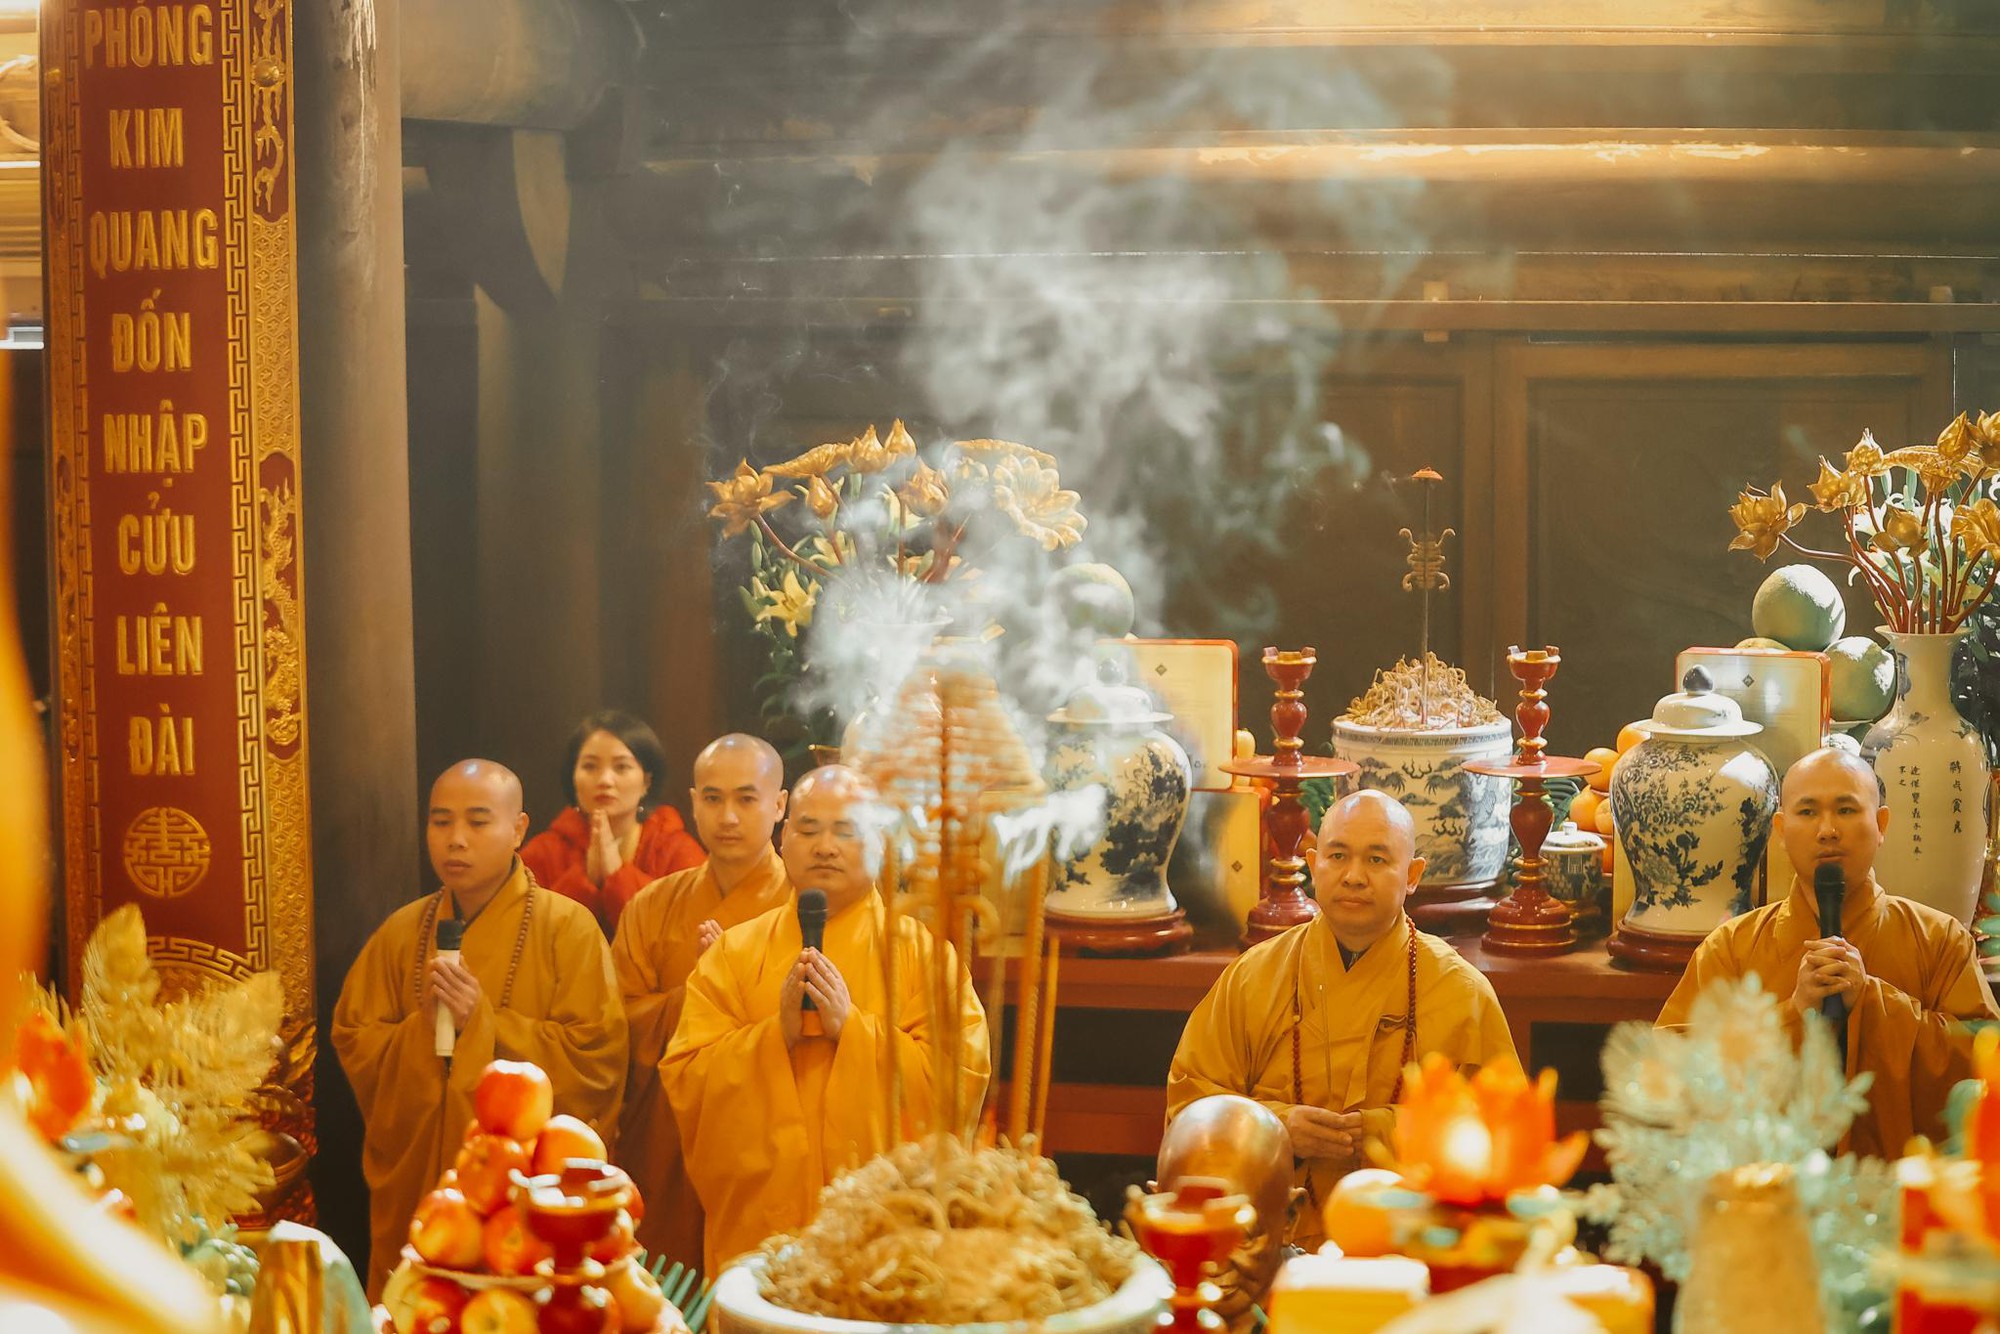 Tháng 5 tới đỉnh thiêng Fansipan dự lễ Phật đản, ngắm mùa hoa hồng tựa cổ tích- Ảnh 1.